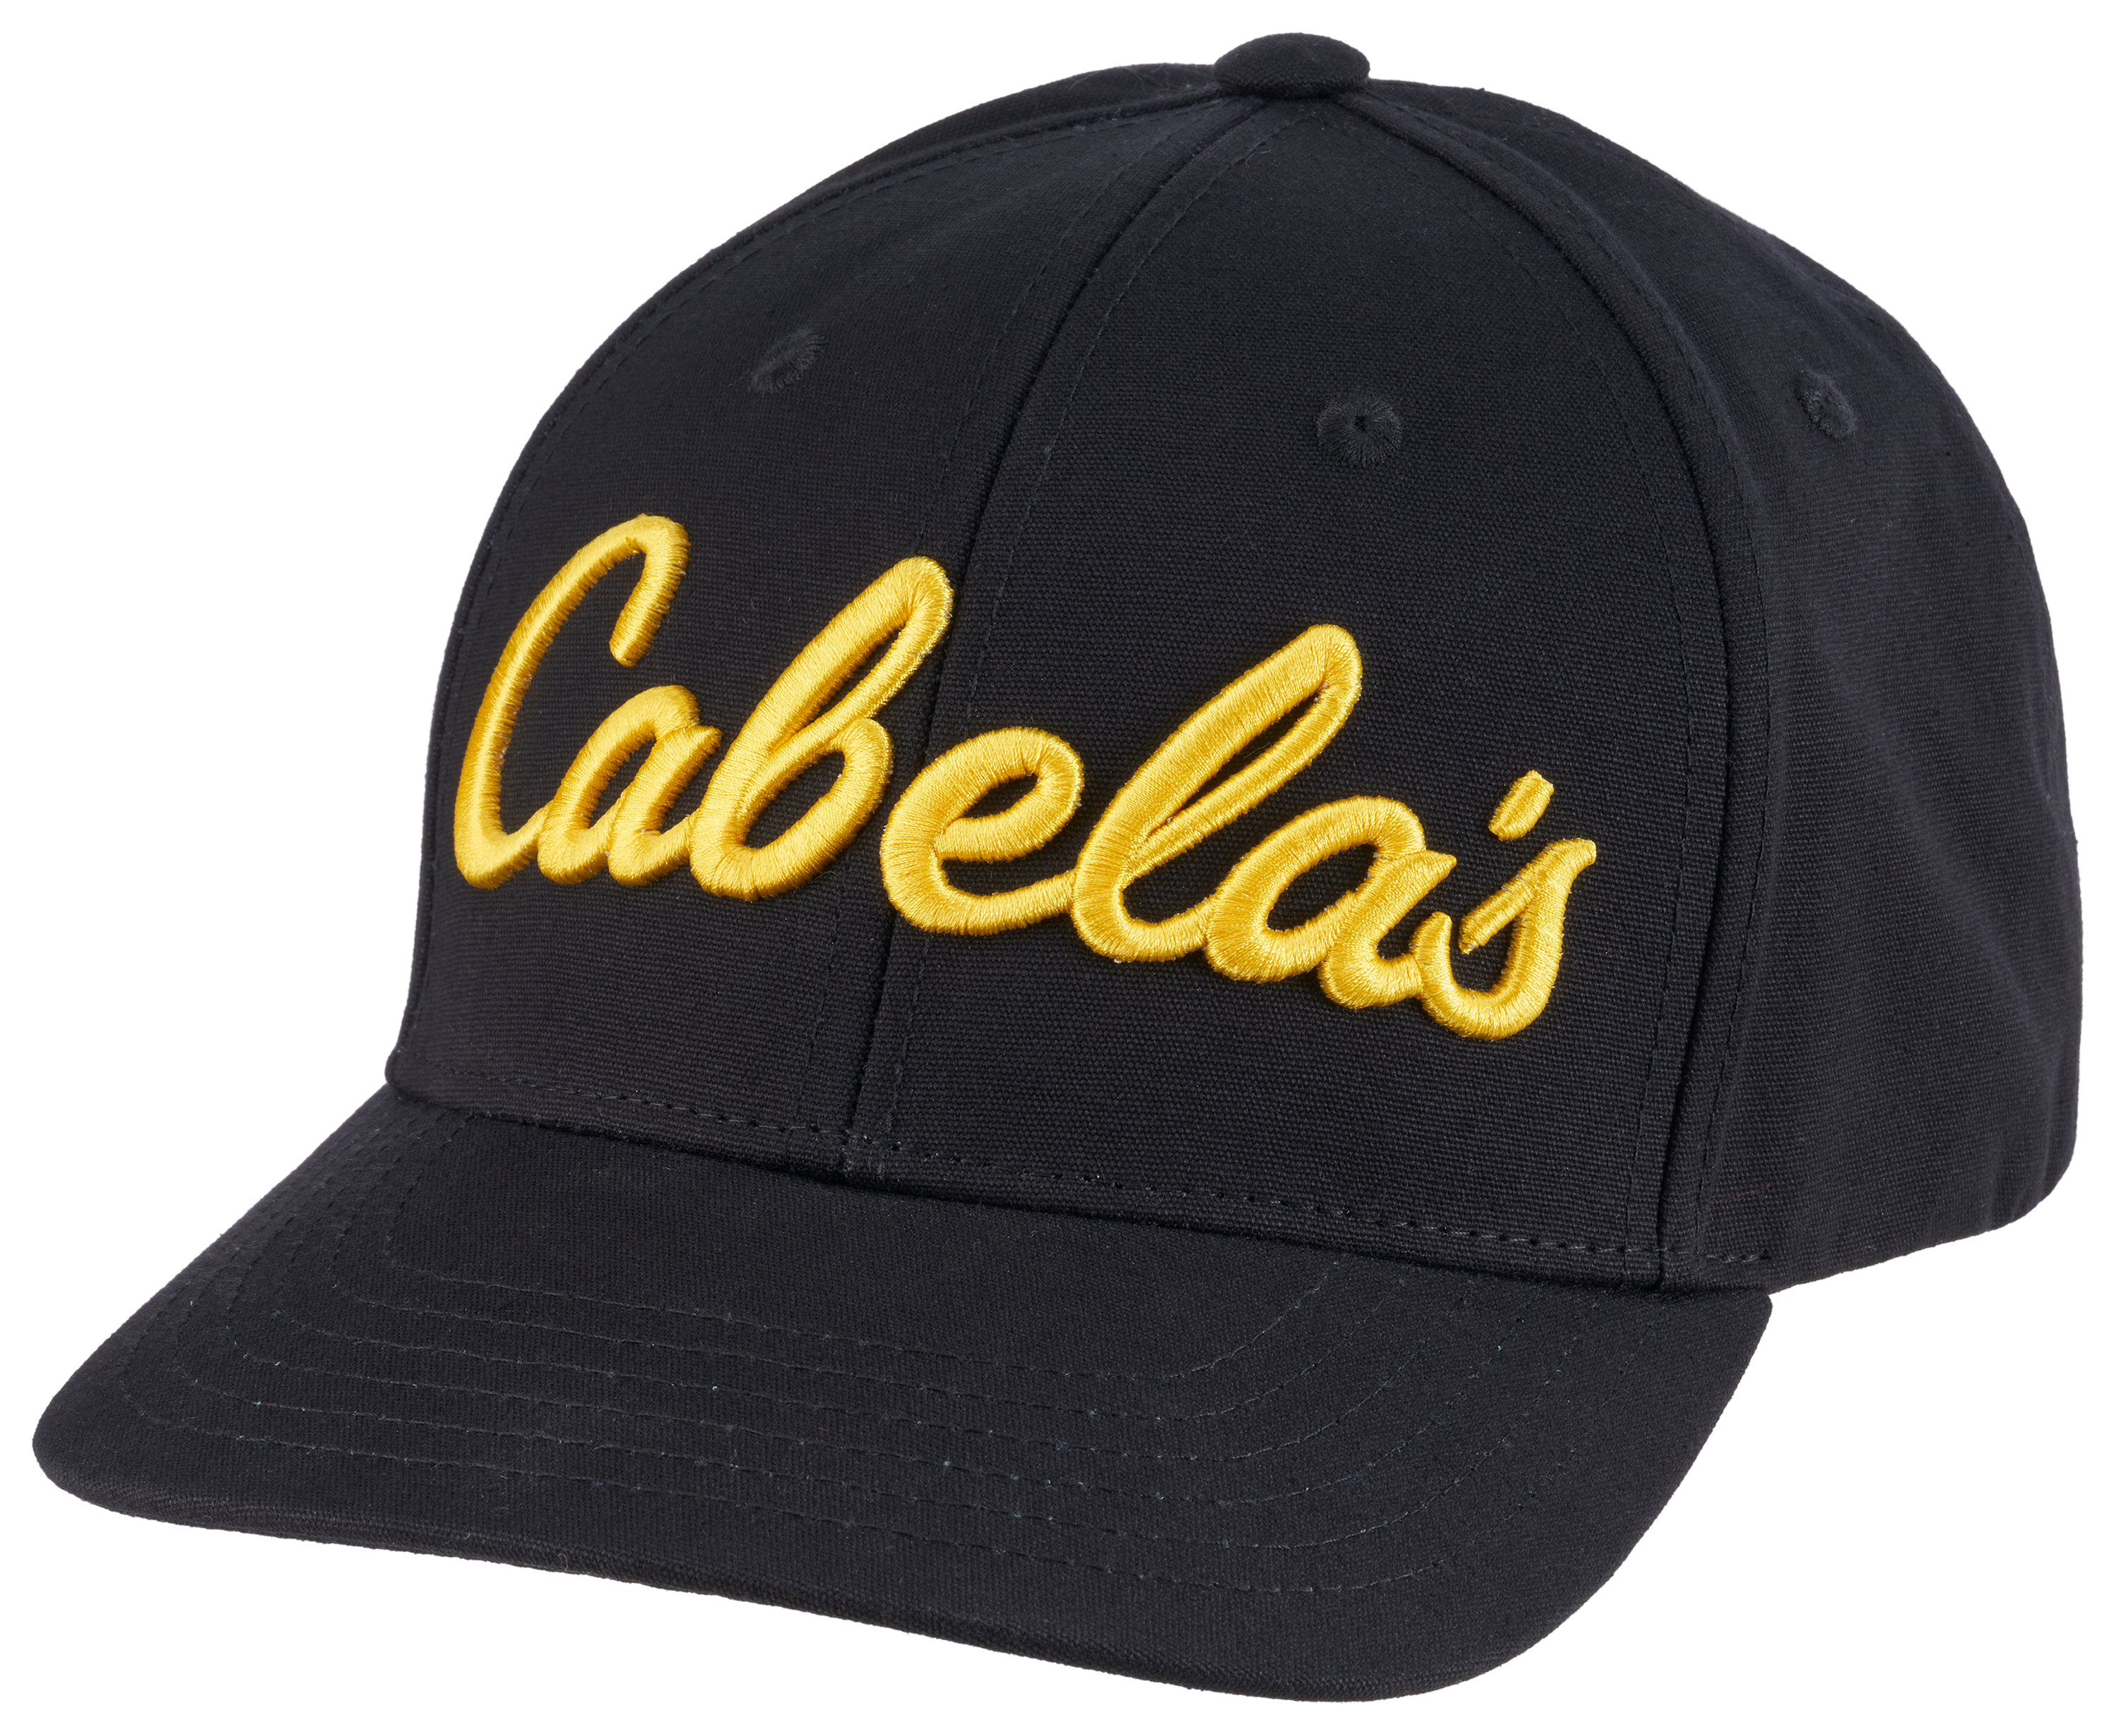 Cabela's Canvas Cap